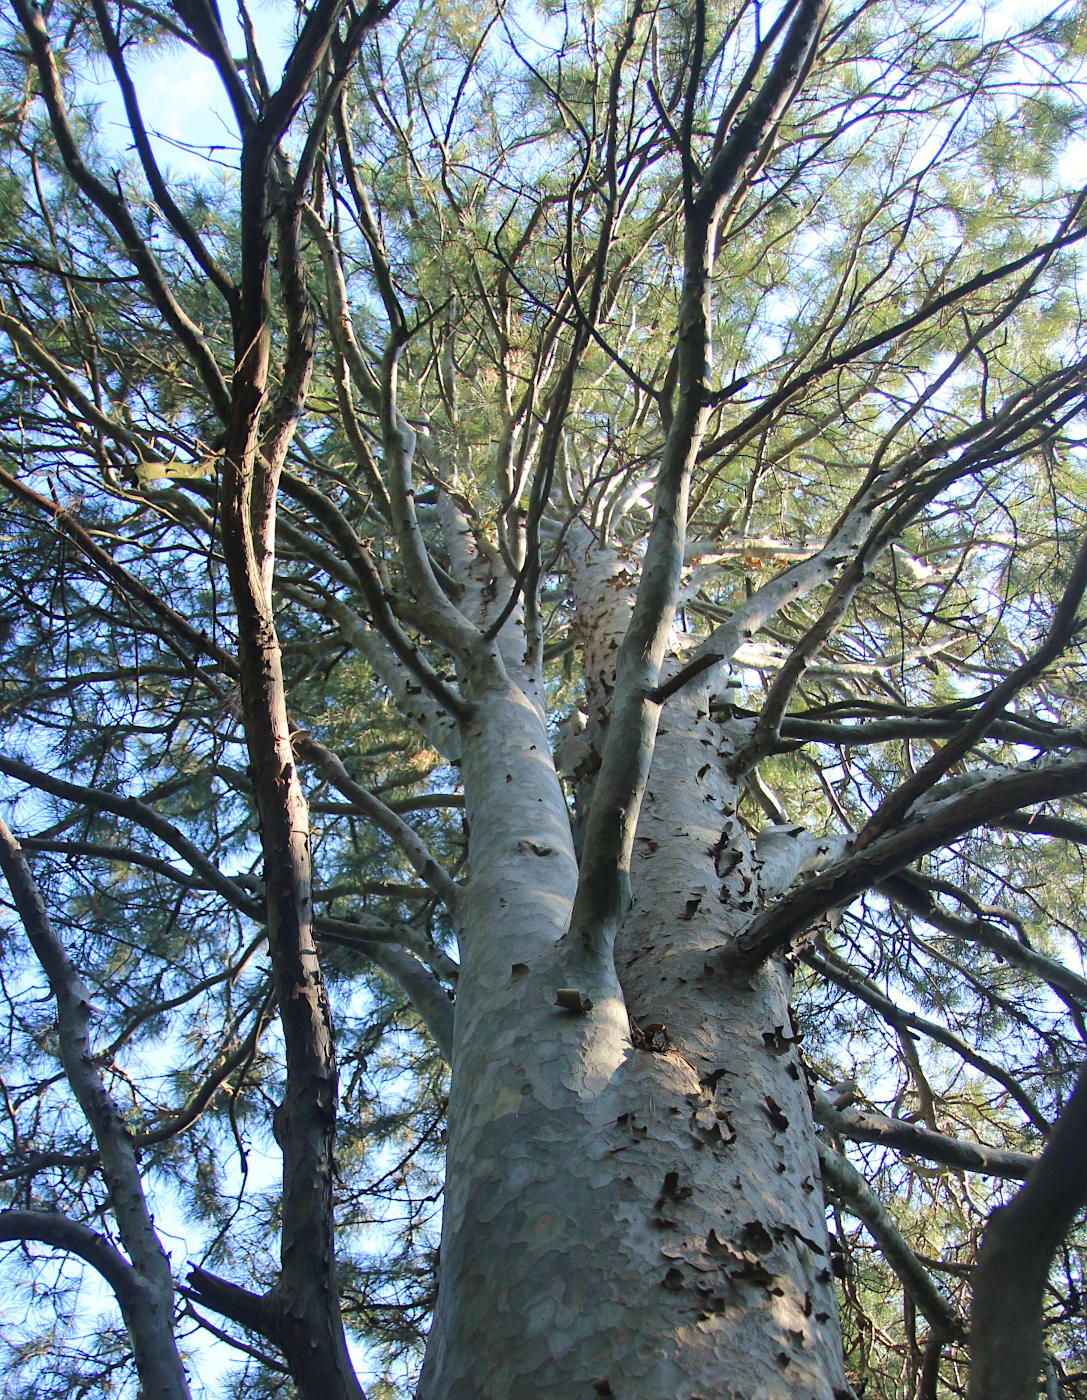 Изображение особи Pinus gerardiana.